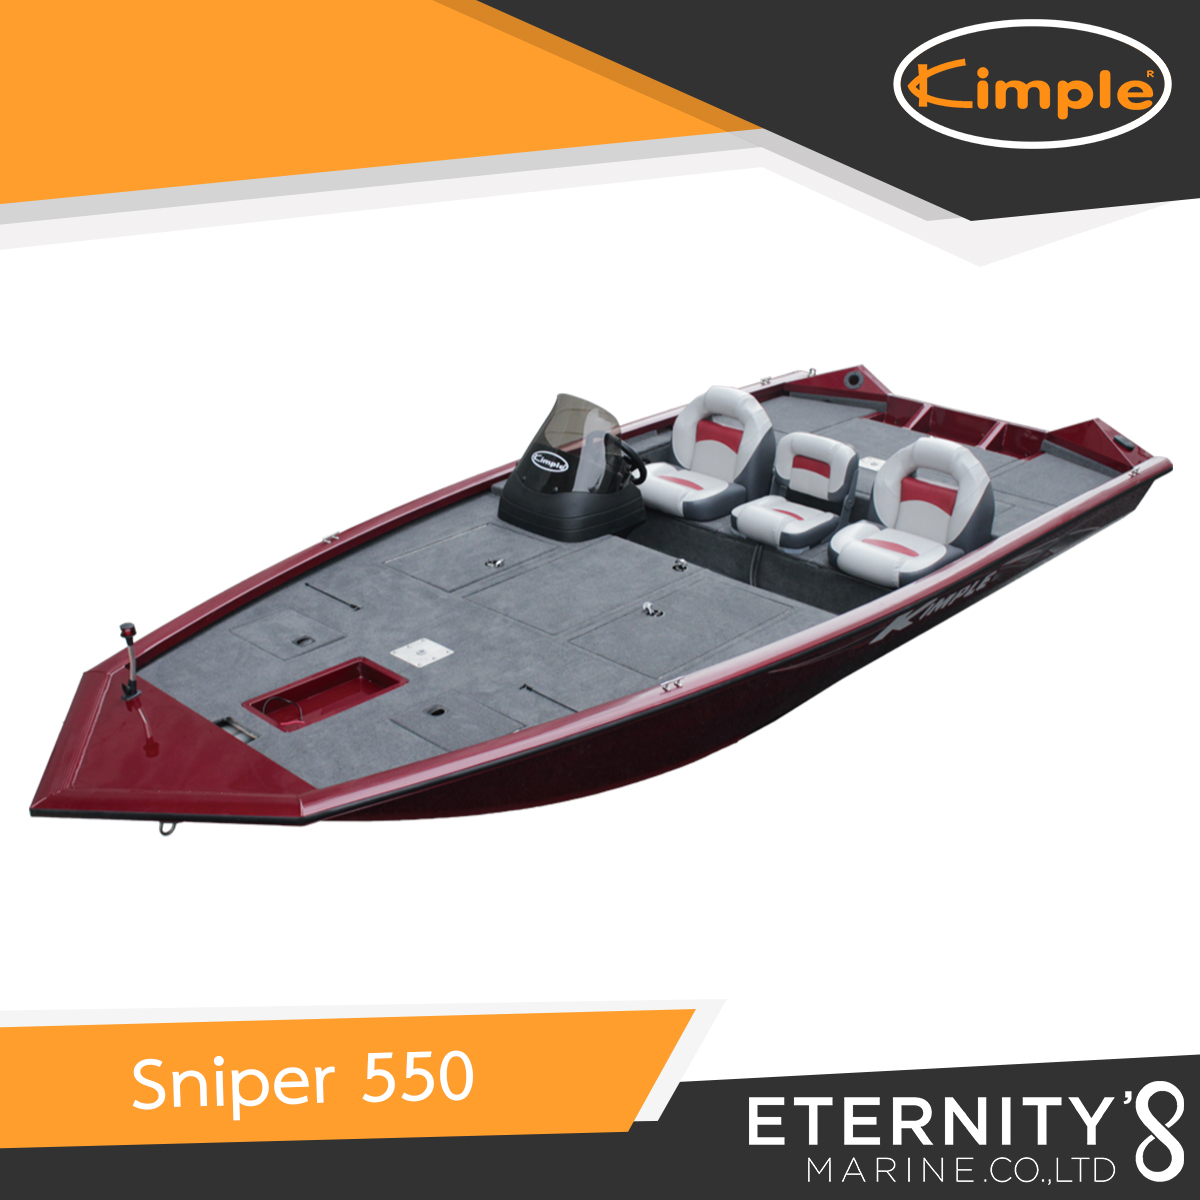 Kimple Sniper 550